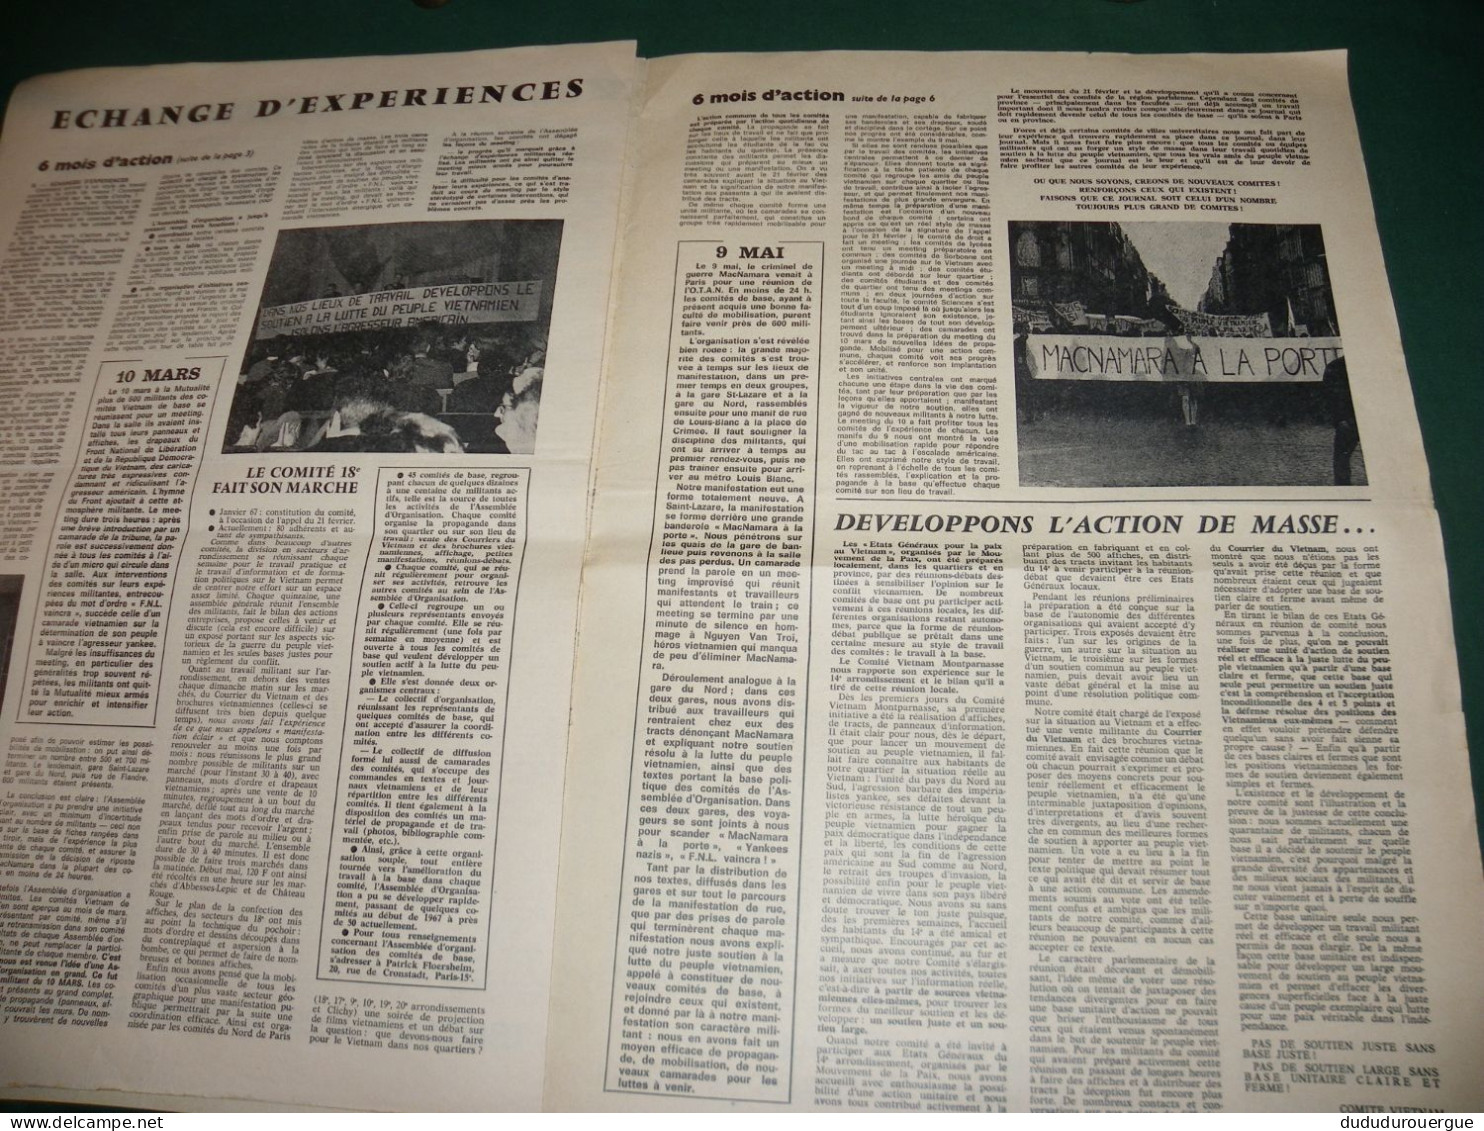 GUERRE DU VIETNAM : " VICTOIRE POUR LE VIETNAM " JOURNAL DES COMITES VIETNAM DE BASE , LE N ° 1 - 1950 à Nos Jours